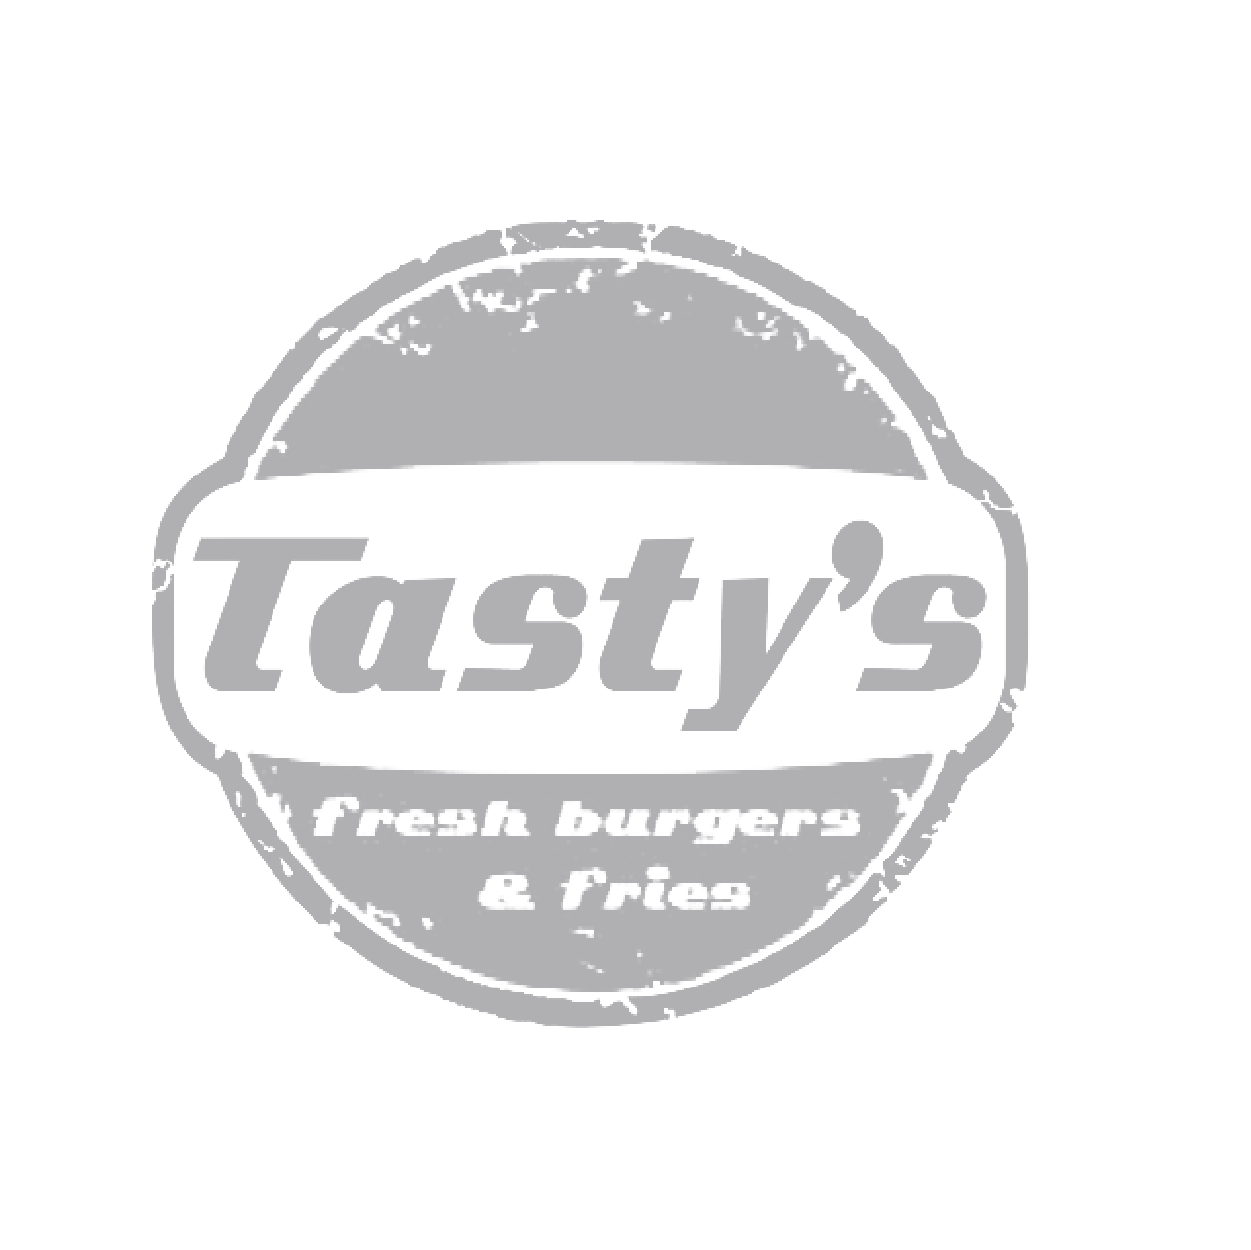 Tasty's logo in gray